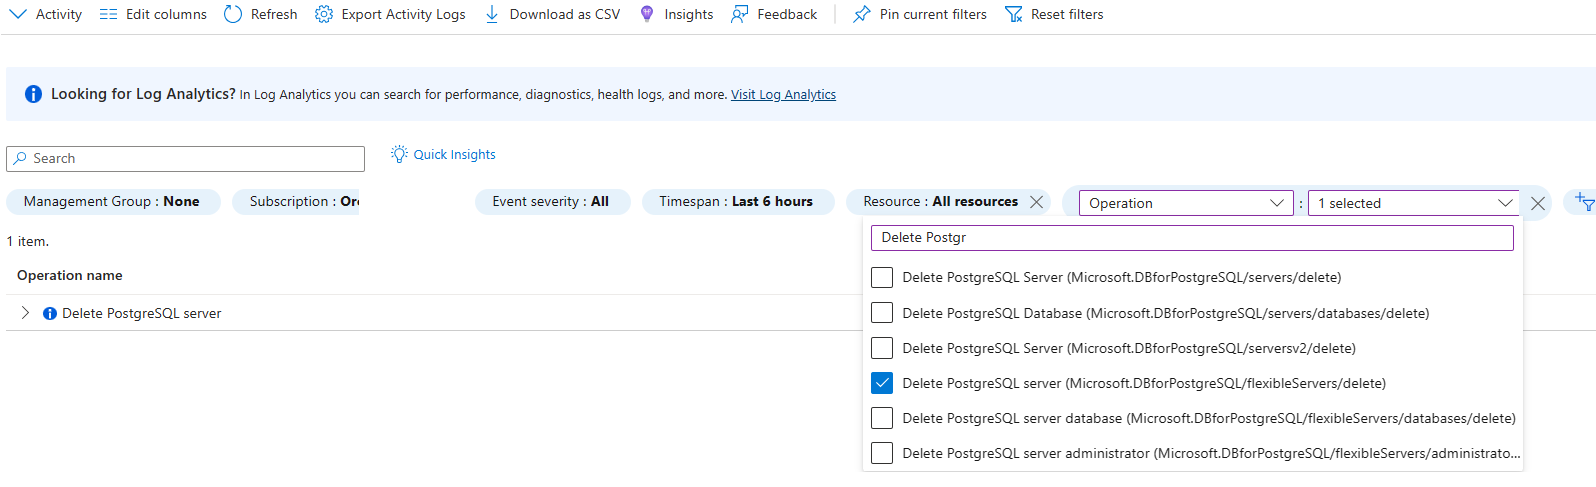 Capture d’écran du Journal d’activité filtré pour l’opération de suppression du serveur PostgreSQL.